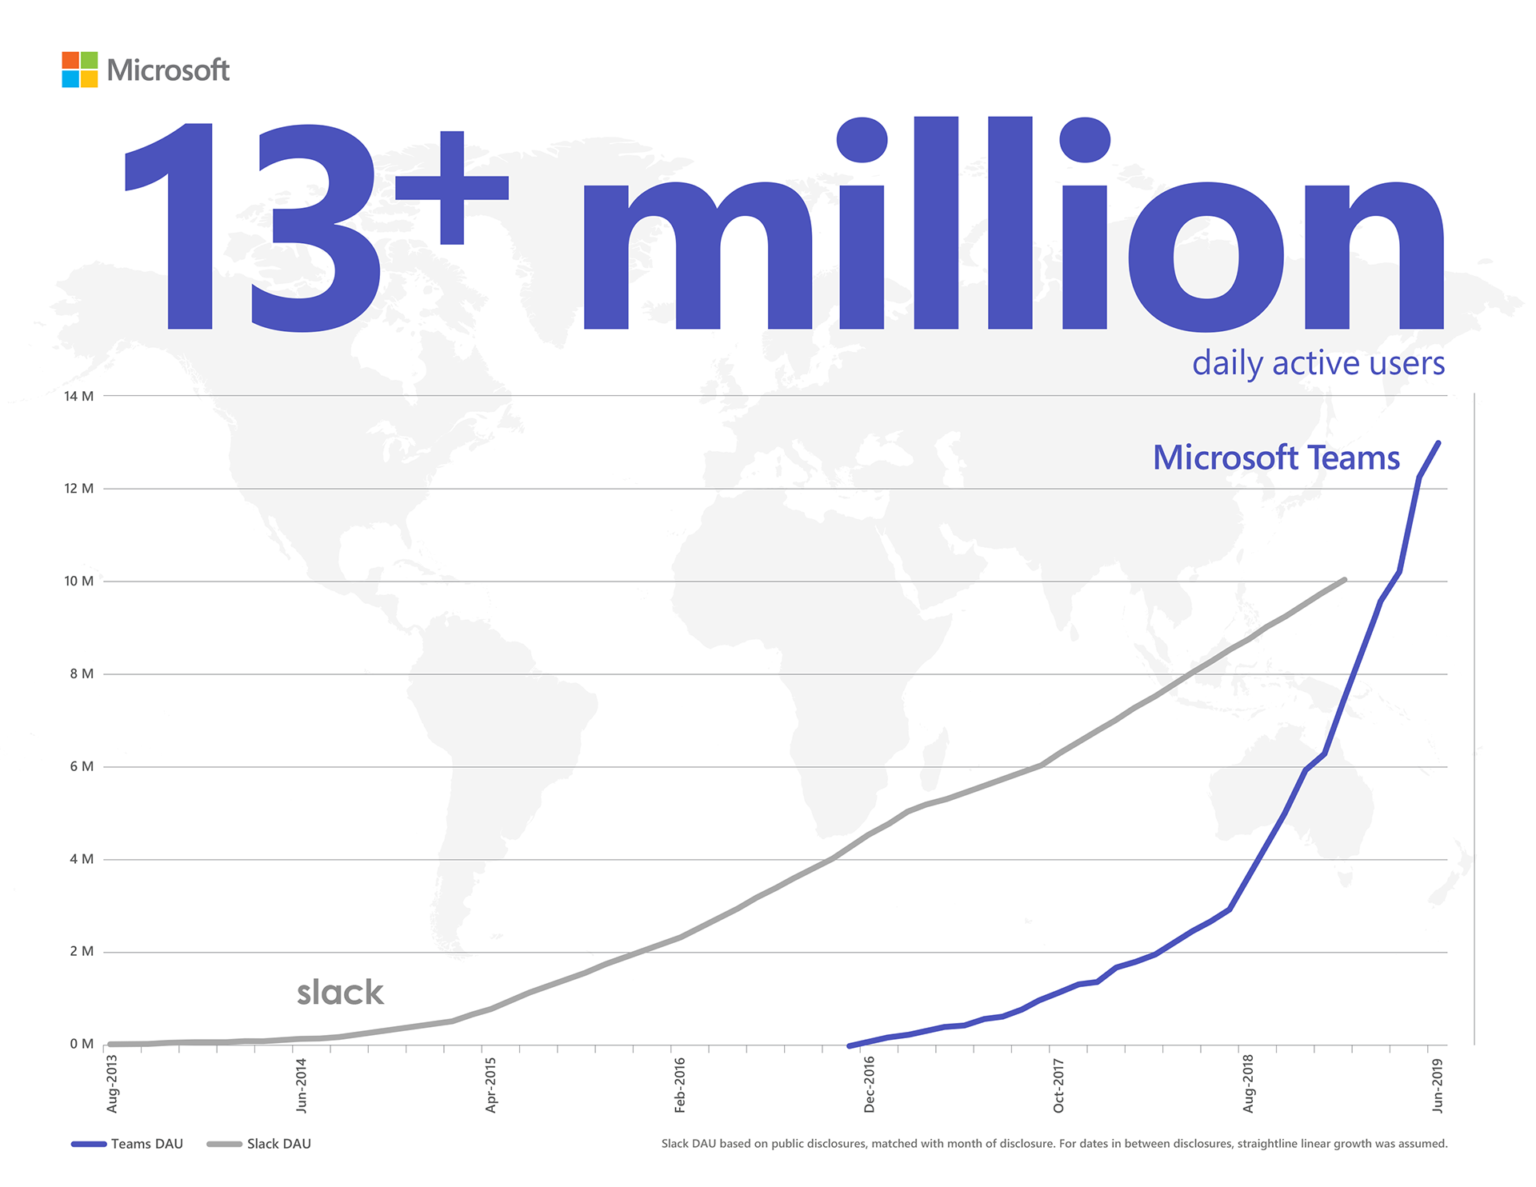 Инфографика, показывающая, как Microsoft Teams обгоняет приложение Slack по числу ежедневно активных пользователей (свыше 13 млн). Сведения о ежедневно активных пользователях Slack основаны на данных, опубликованных в открытом доступе, и указаны для соответствующего месяца. Между датами предоставления данных предполагается уверенный линейный рост показателей.